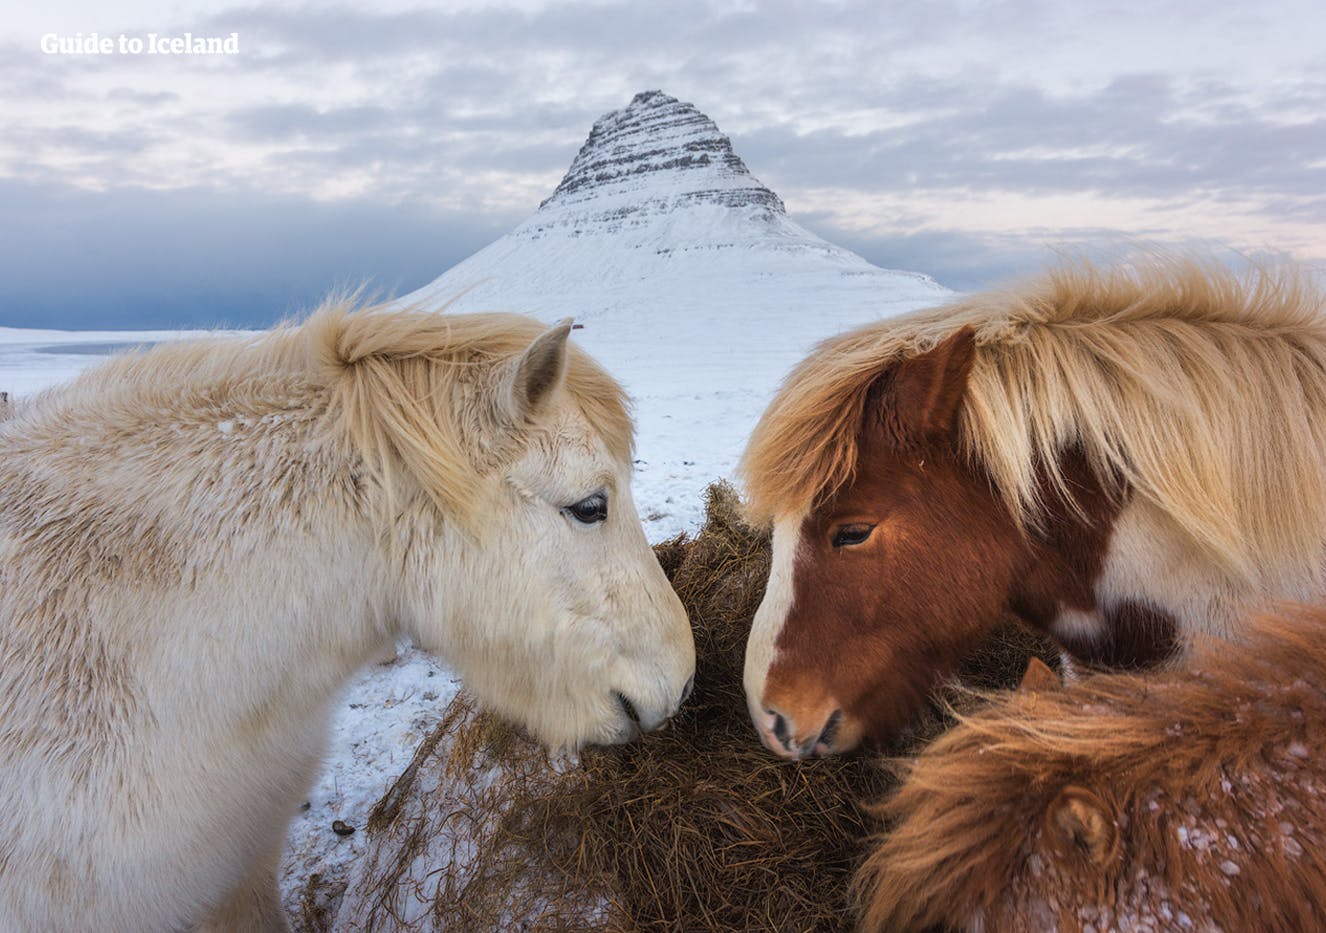 Konie islandzkie przed majestatyczną górą Kirkjufell na półwyspie Snæfellsnes.